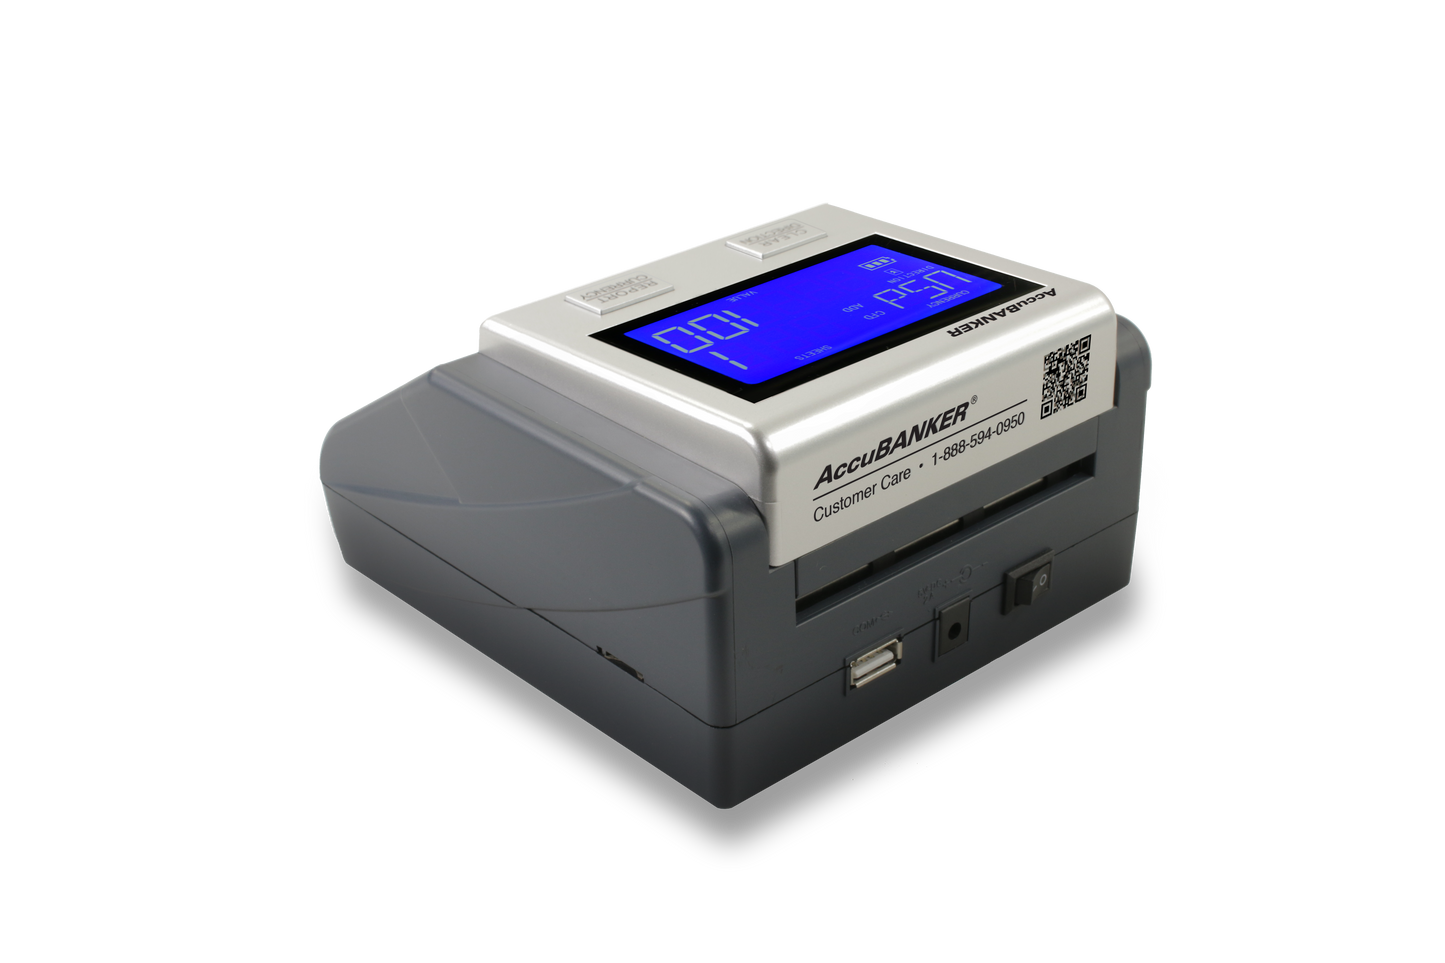 Detector Automático de Billetes Falsos Multiples con Bateria D585